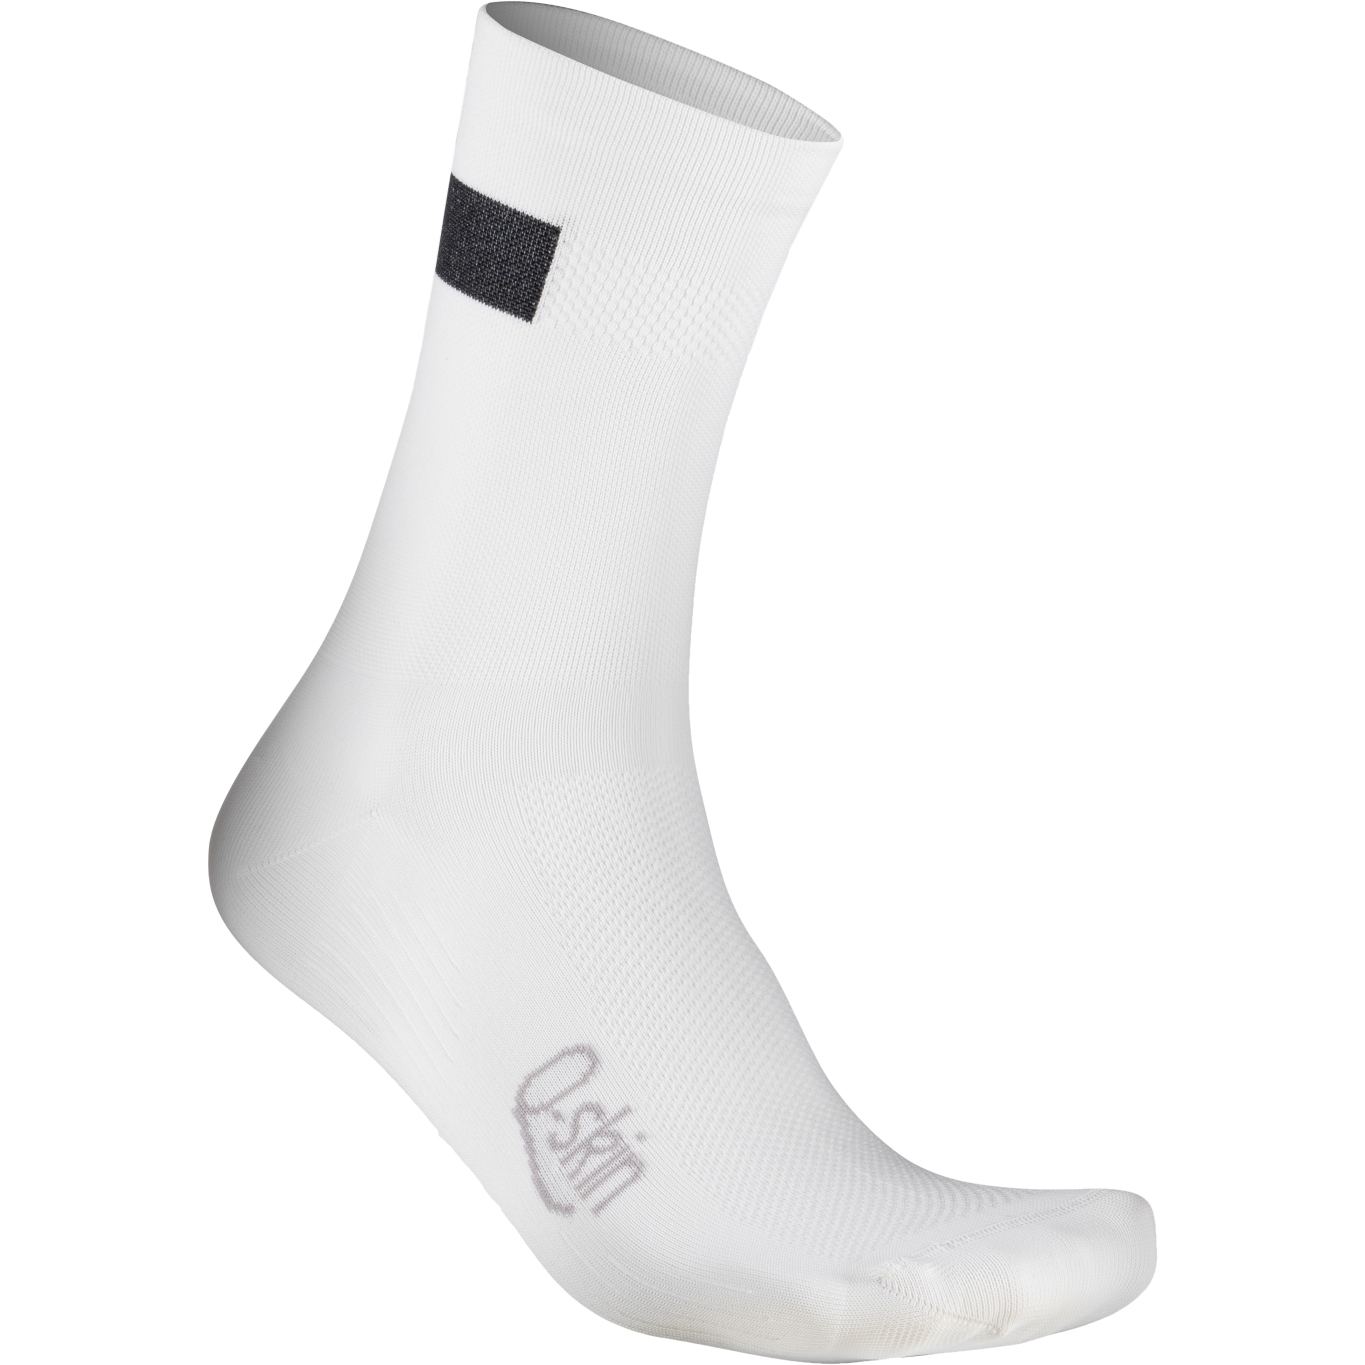 Produktbild von Sportful Snap Socken Damen - 101 Weiß Schwarz